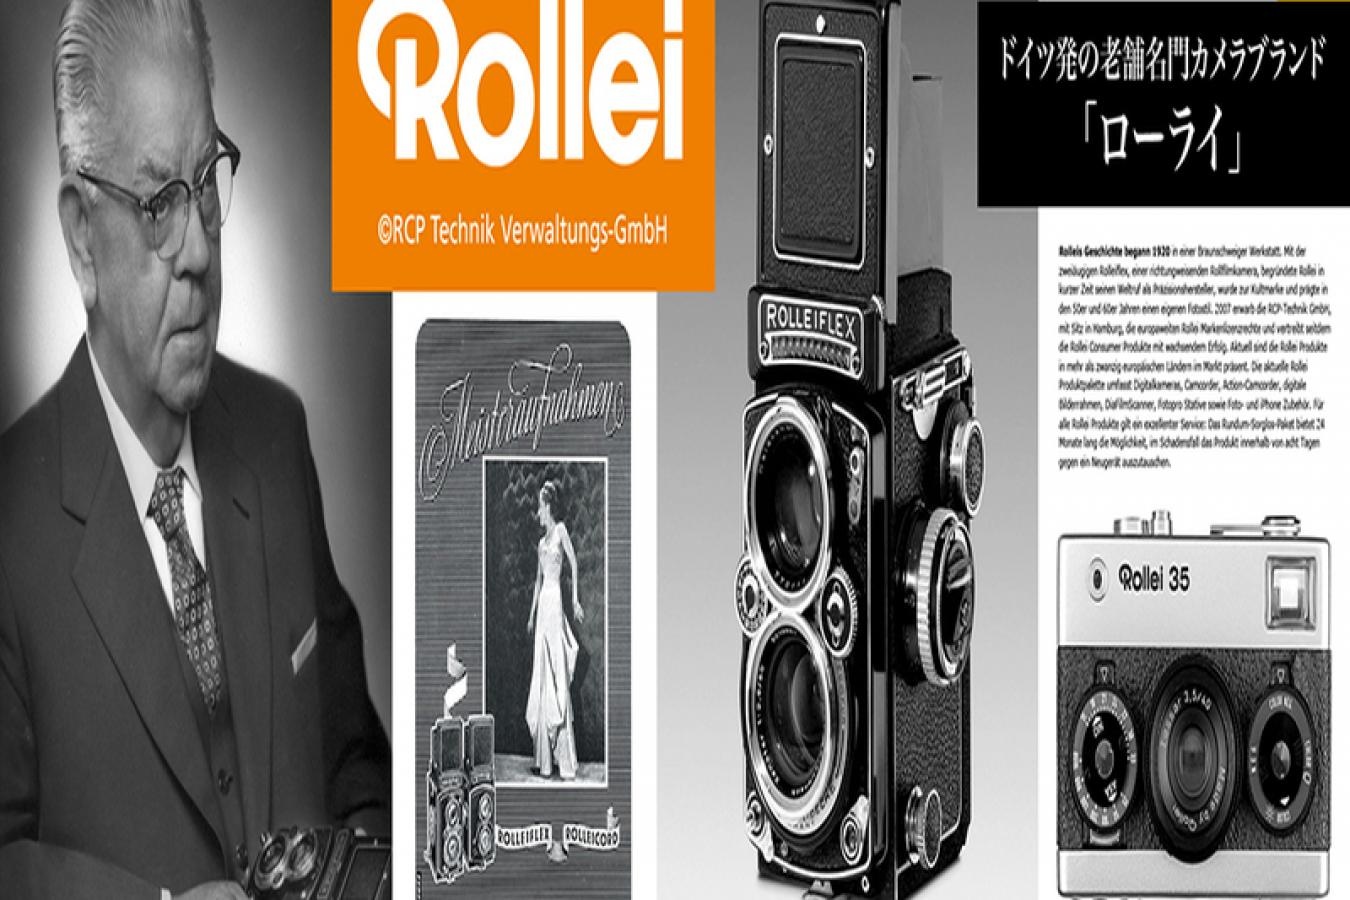 【新 品】Rollei カメラクロス Rollei35 Lサイズ【Rollei 公式グッズ】